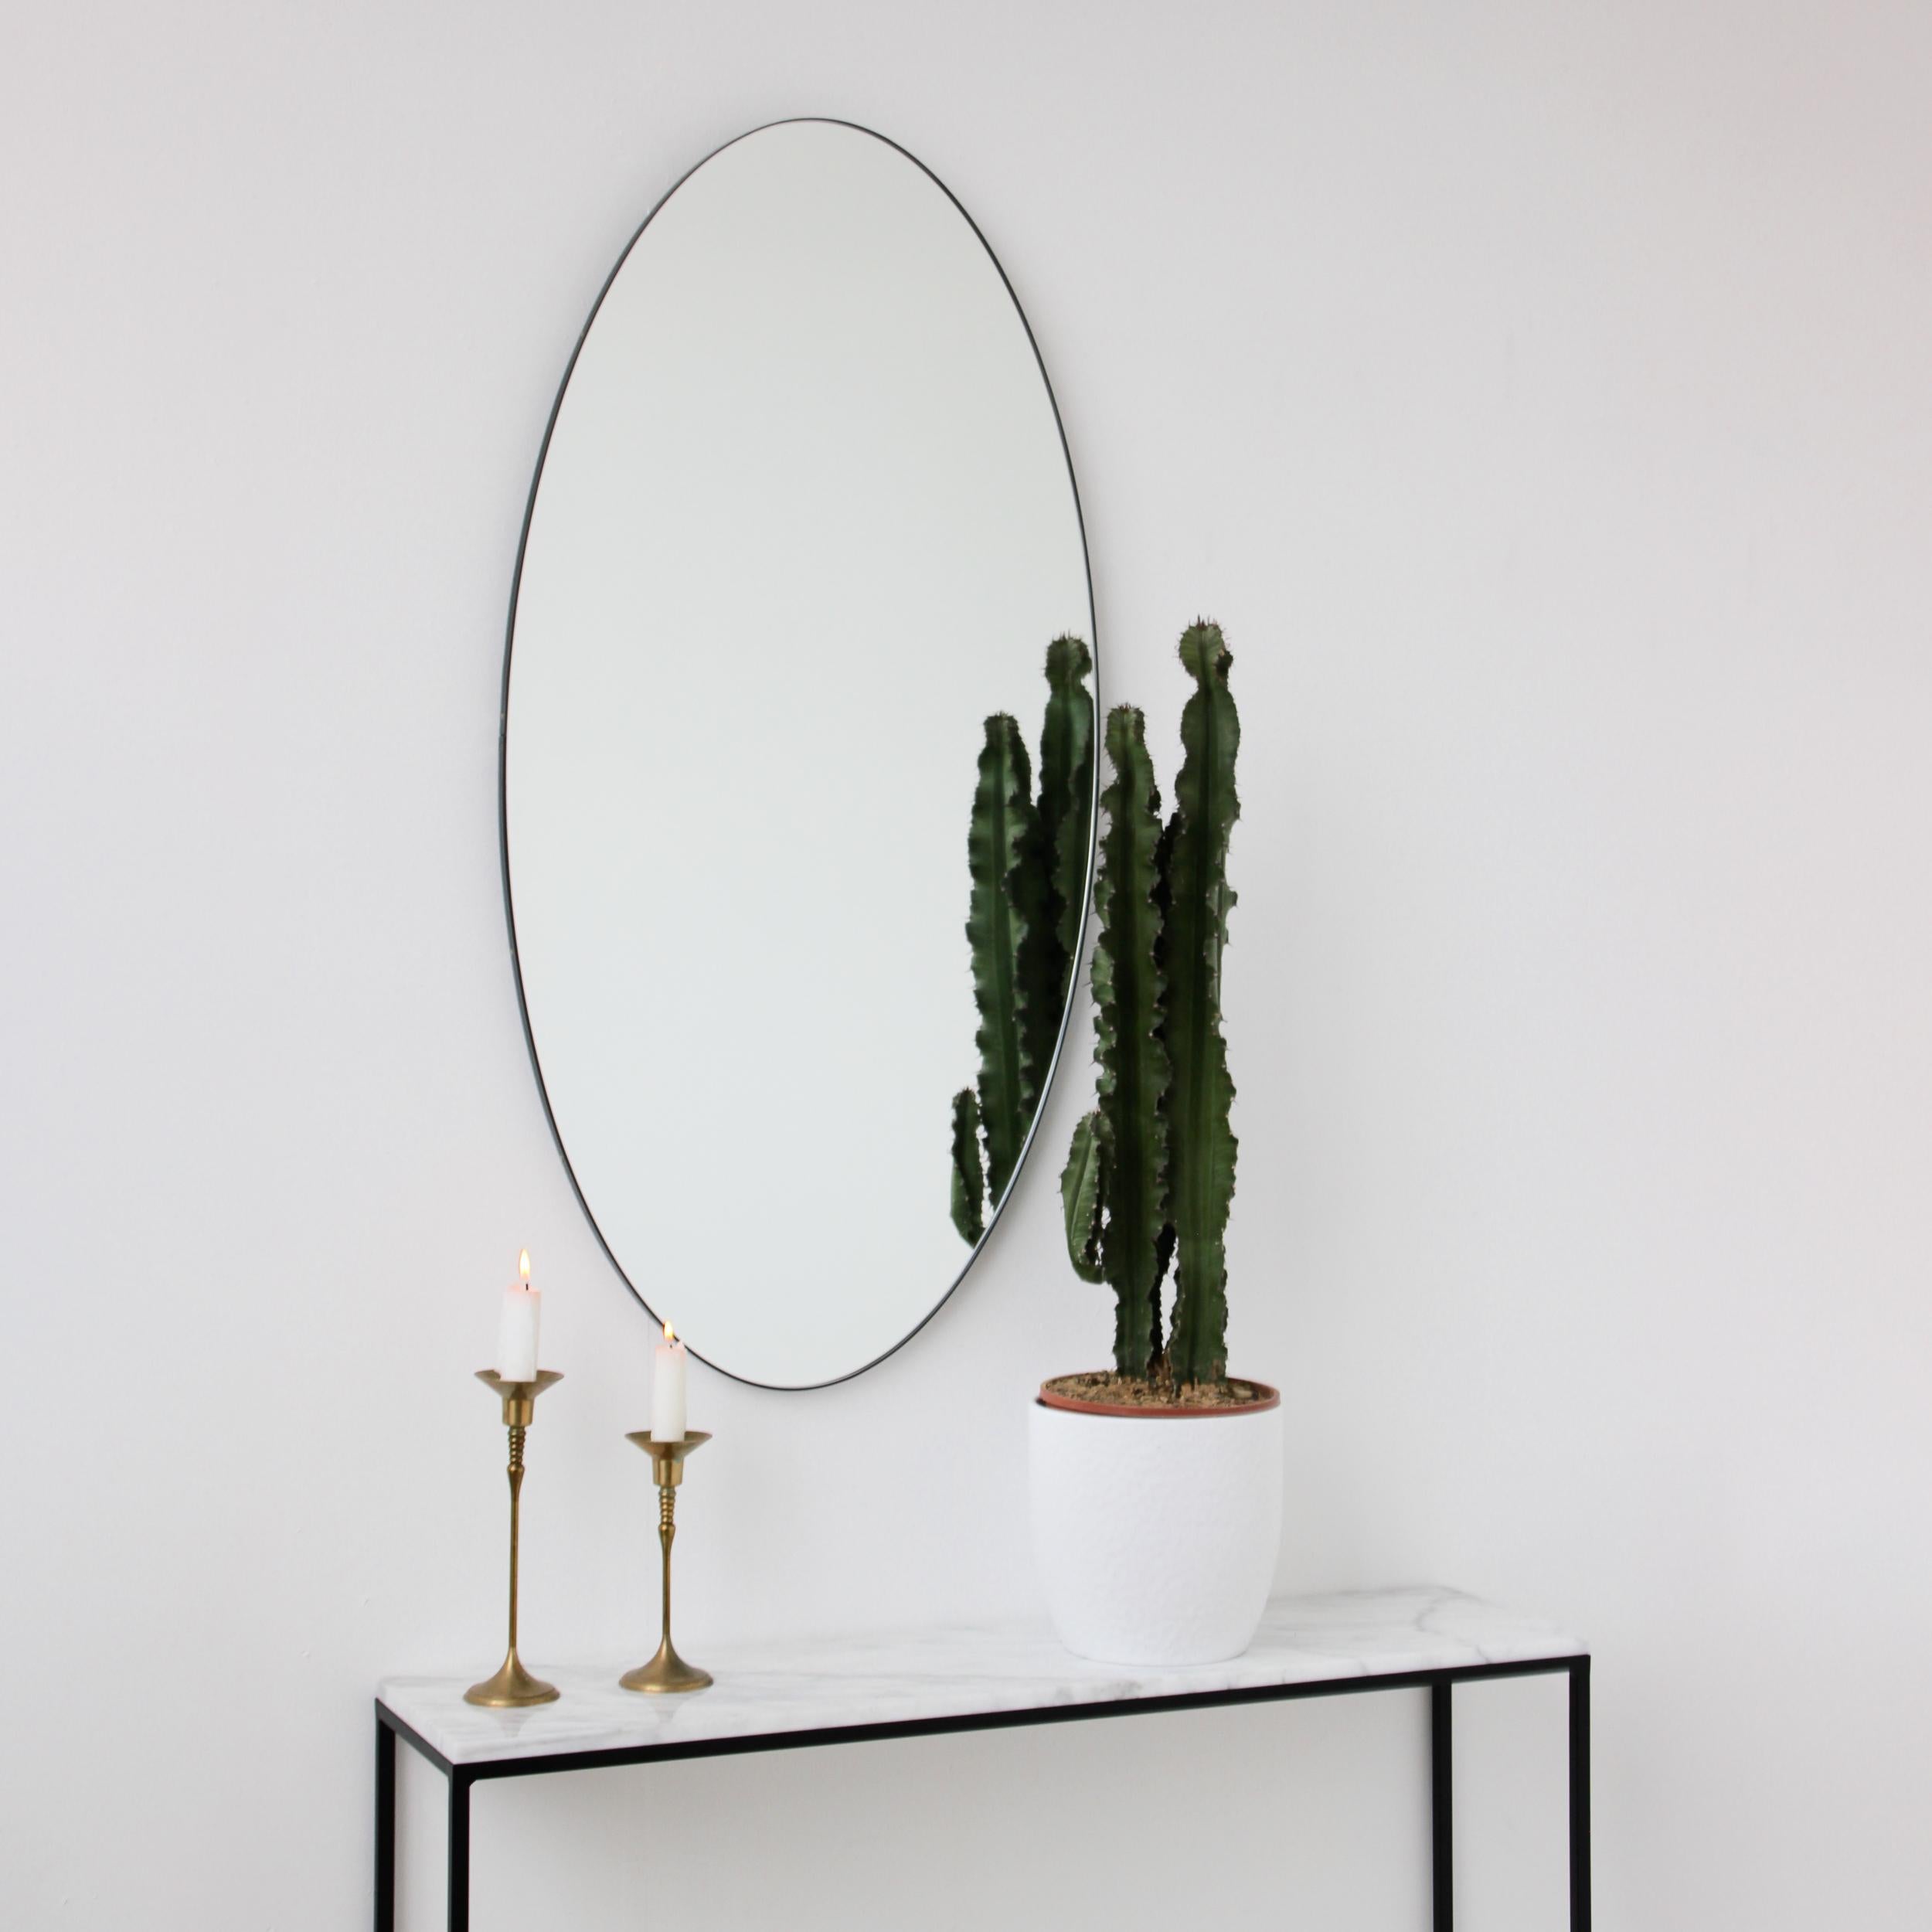 Grand miroir ovale minimaliste avec un cadre contemporain en aluminium peint par poudrage en noir. Conçu et fabriqué à la main à Londres, au Royaume-Uni.

Nos miroirs sont conçus avec un système intégré de tasseaux français (lattes fendues) qui